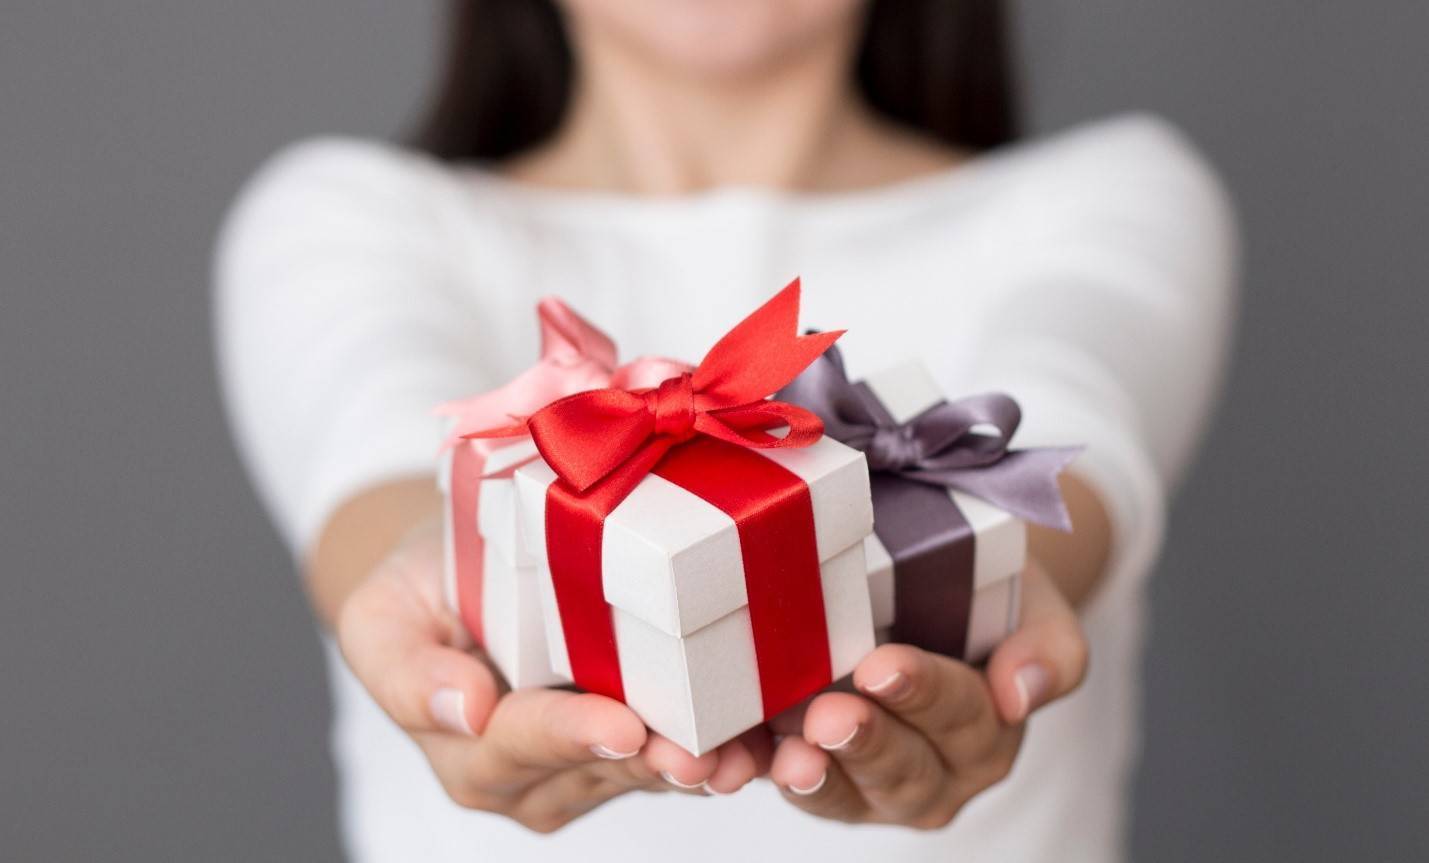 Как получать подарки от мужчин: он завалит тебя дорогими презентами ⇒ блог ярослава самойлова